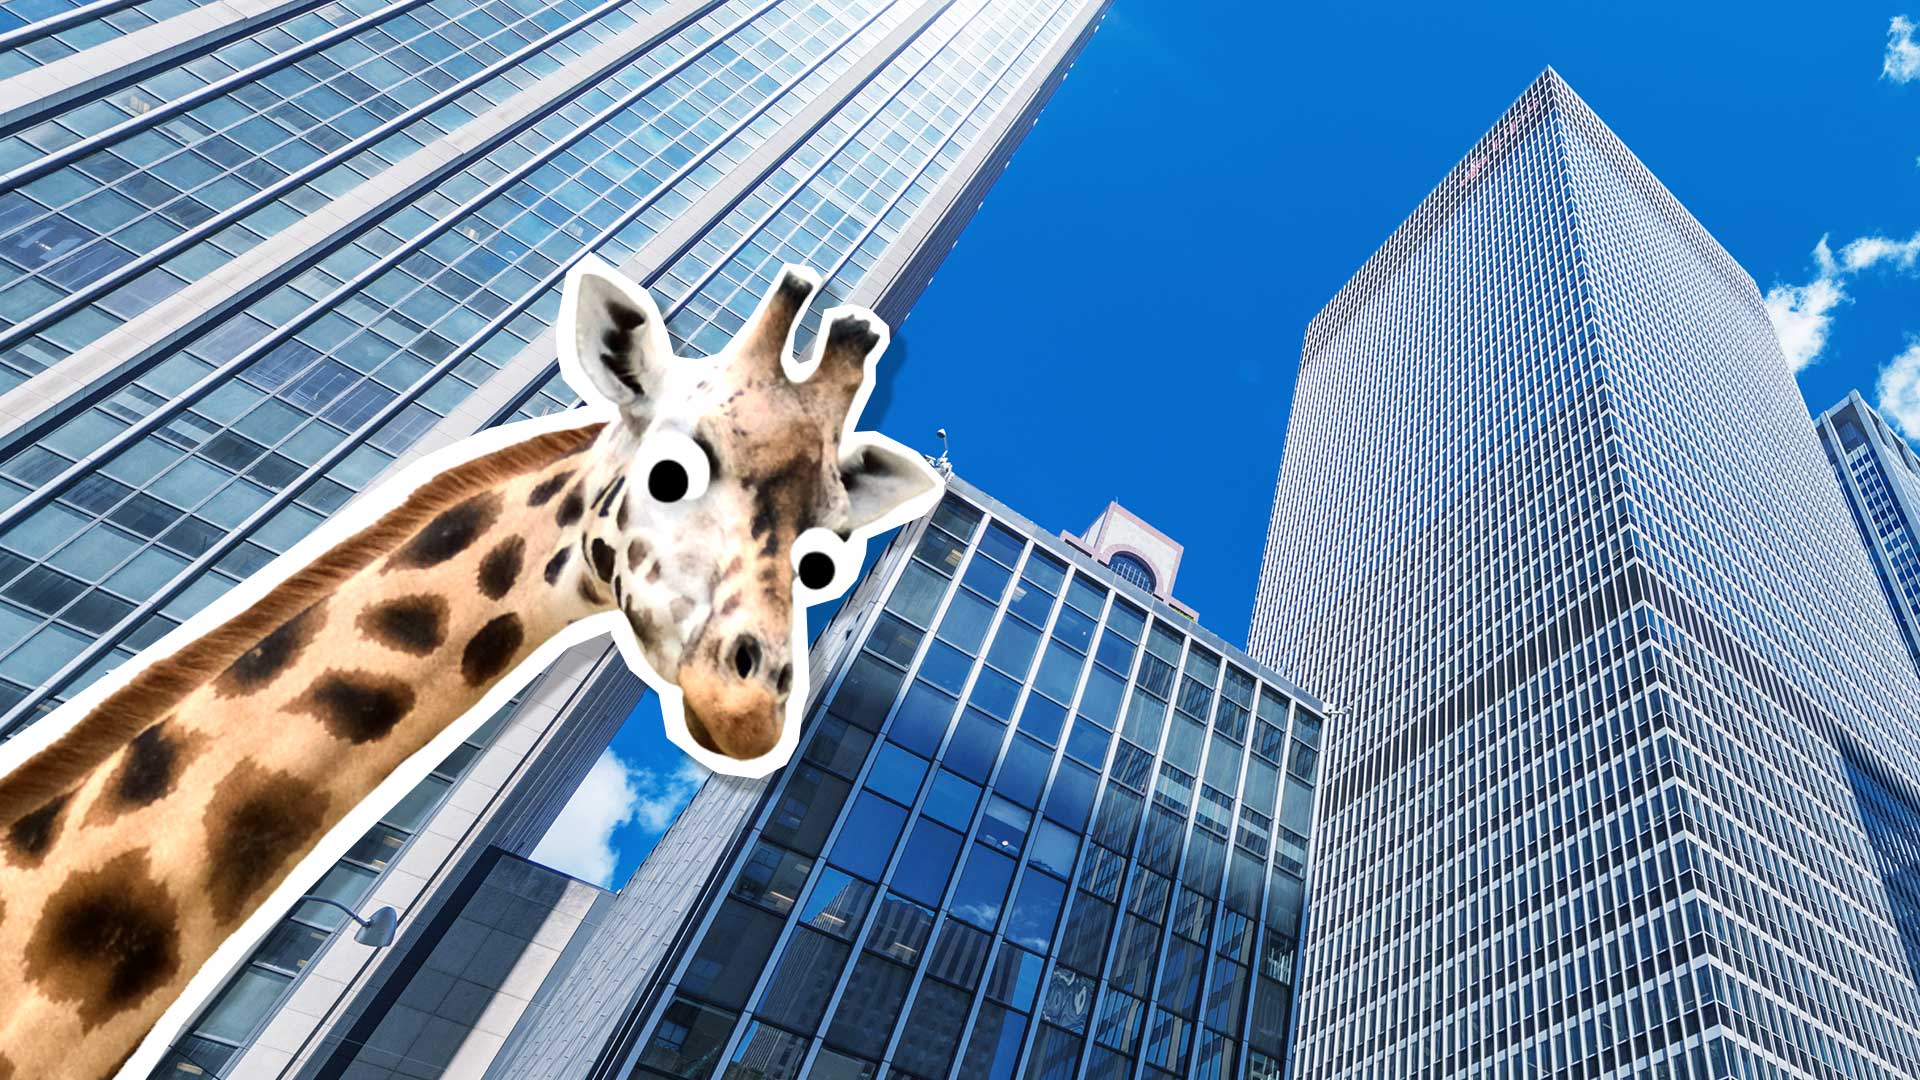 A giraffe in New York